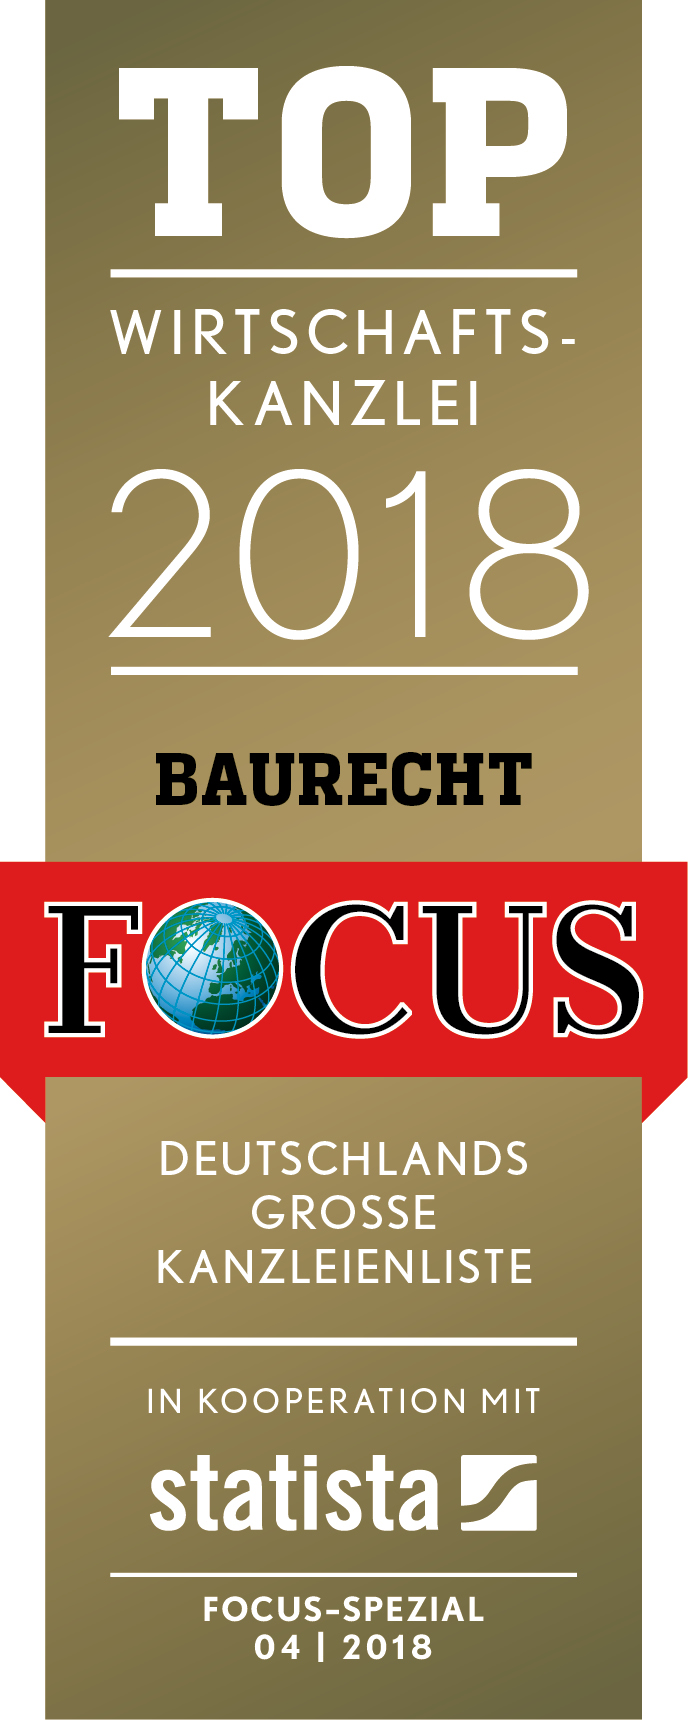 FCS TOP Wirtschaftskanzlei 2018 mit Quelle Baurecht